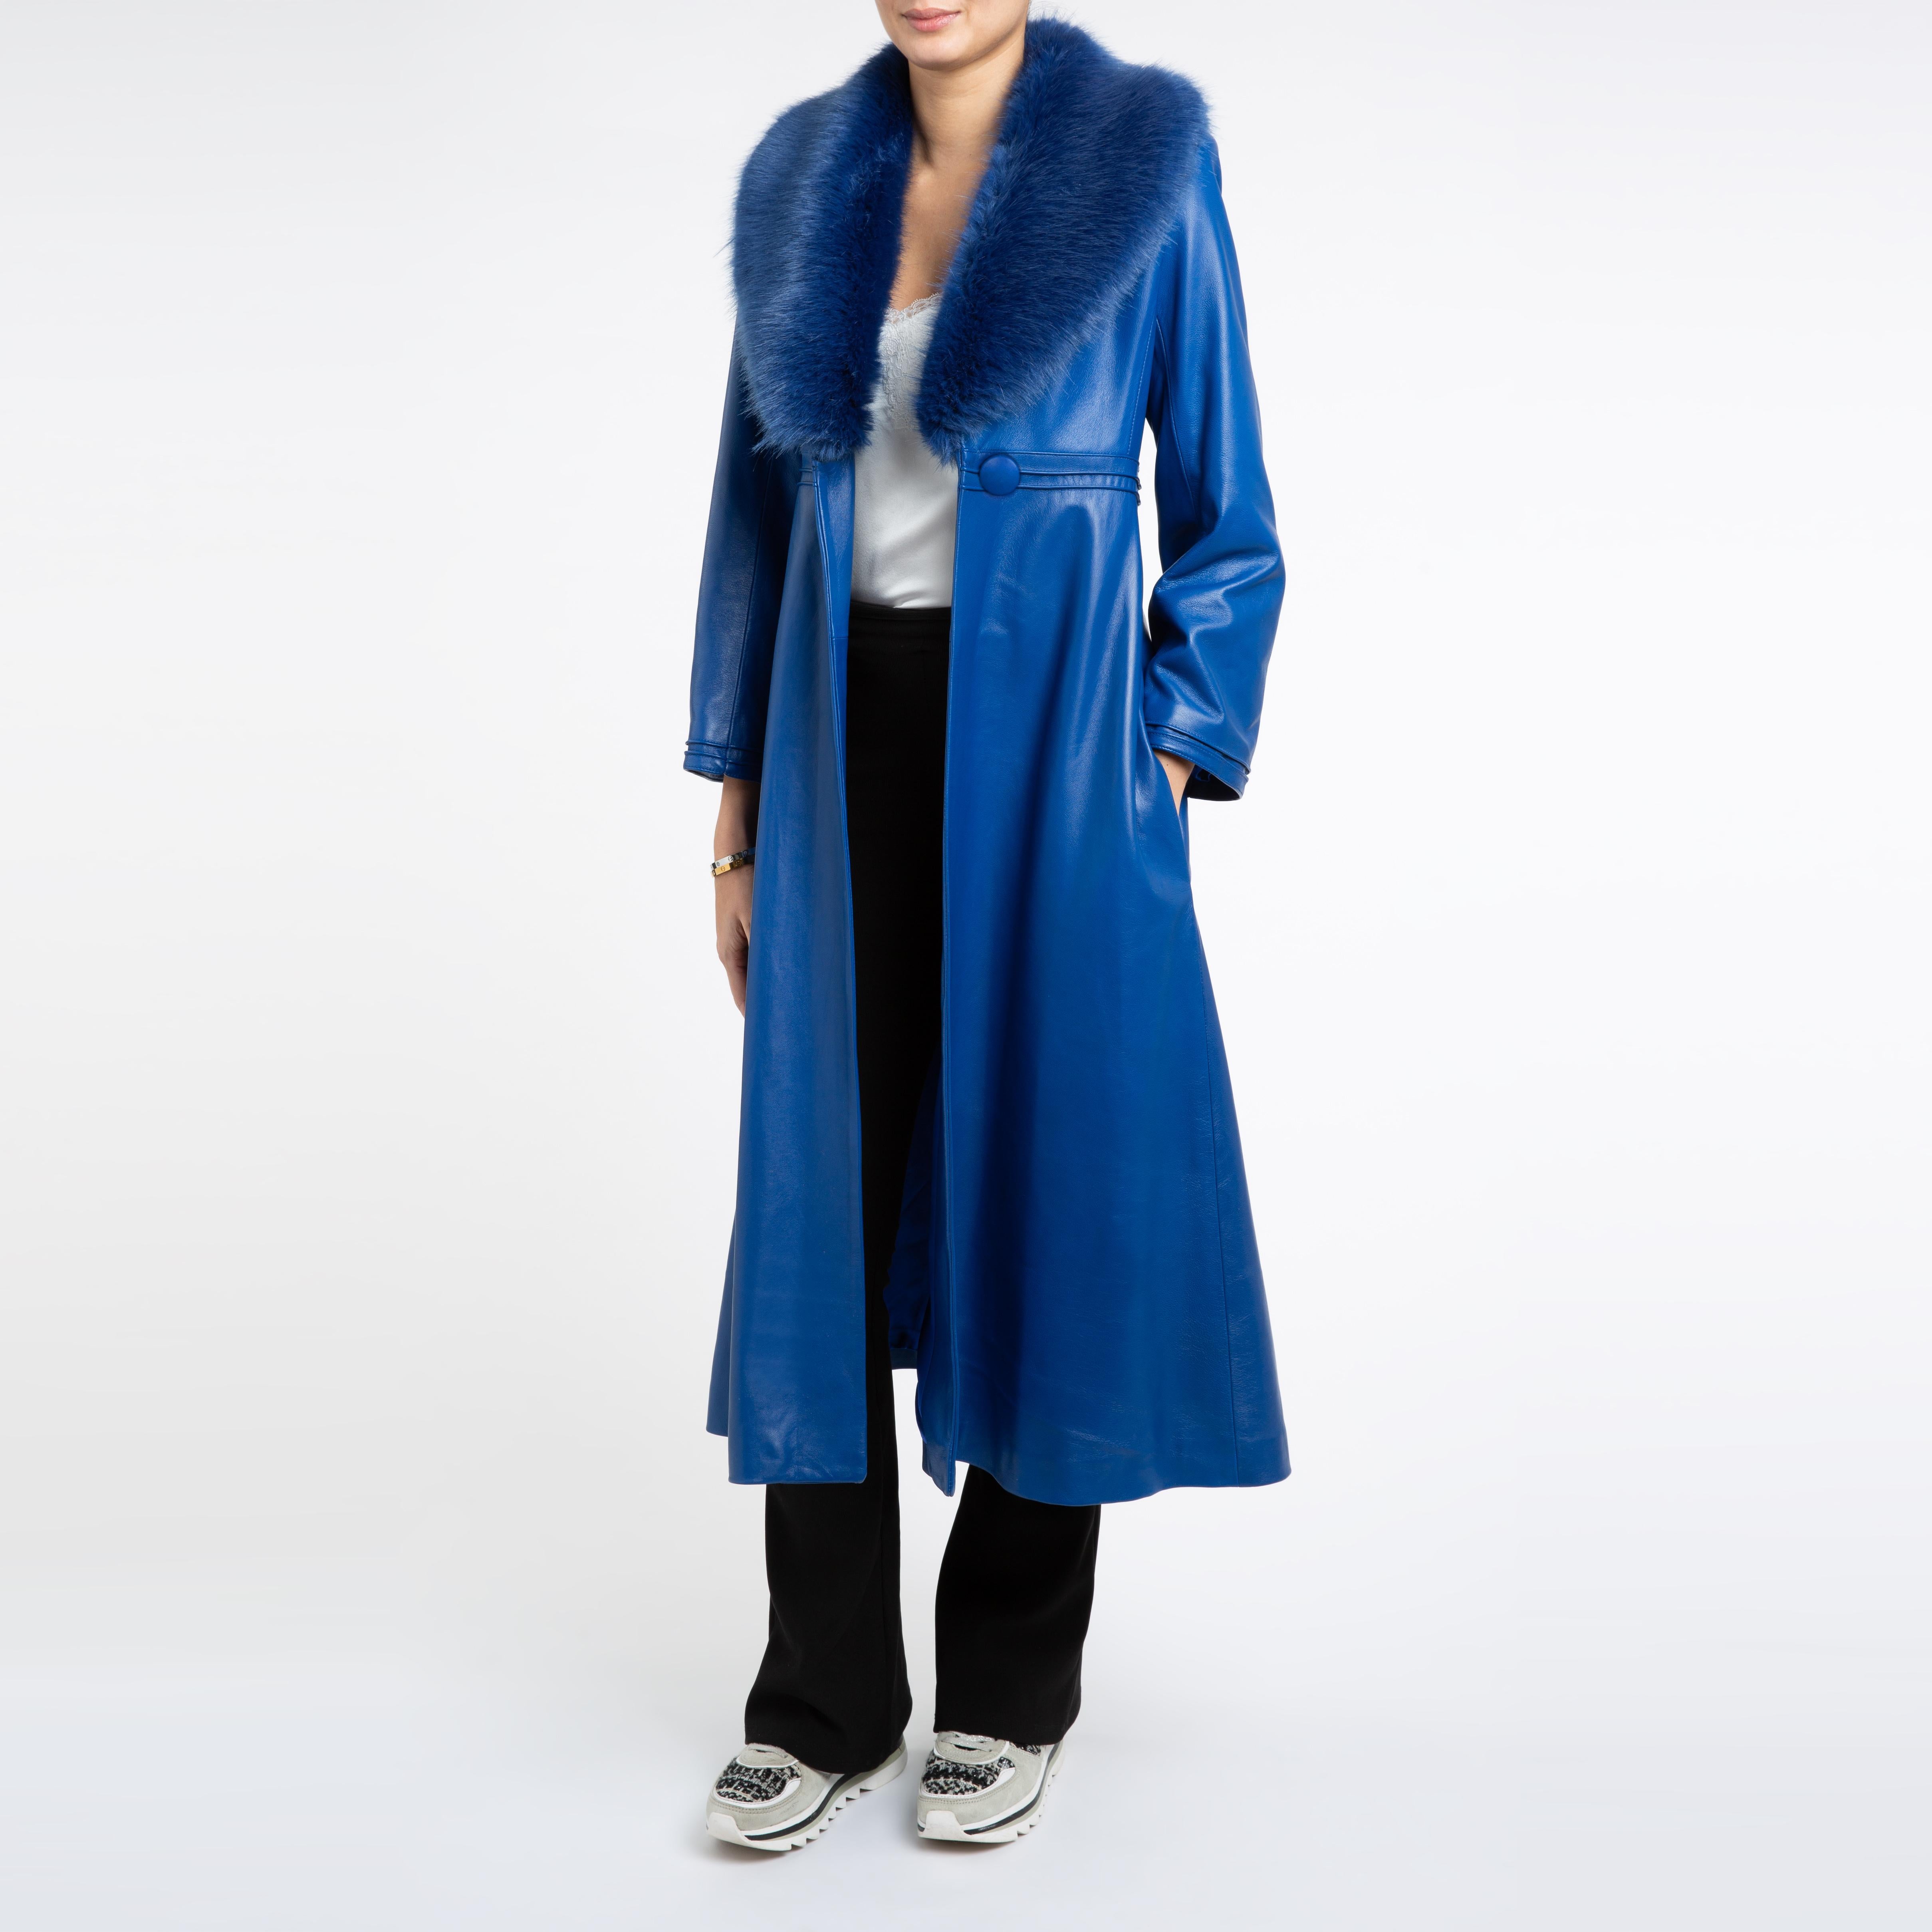 Verheyen London Edward Leather Coat in Blue with Faux Fur - Size uk 8  For Sale 2